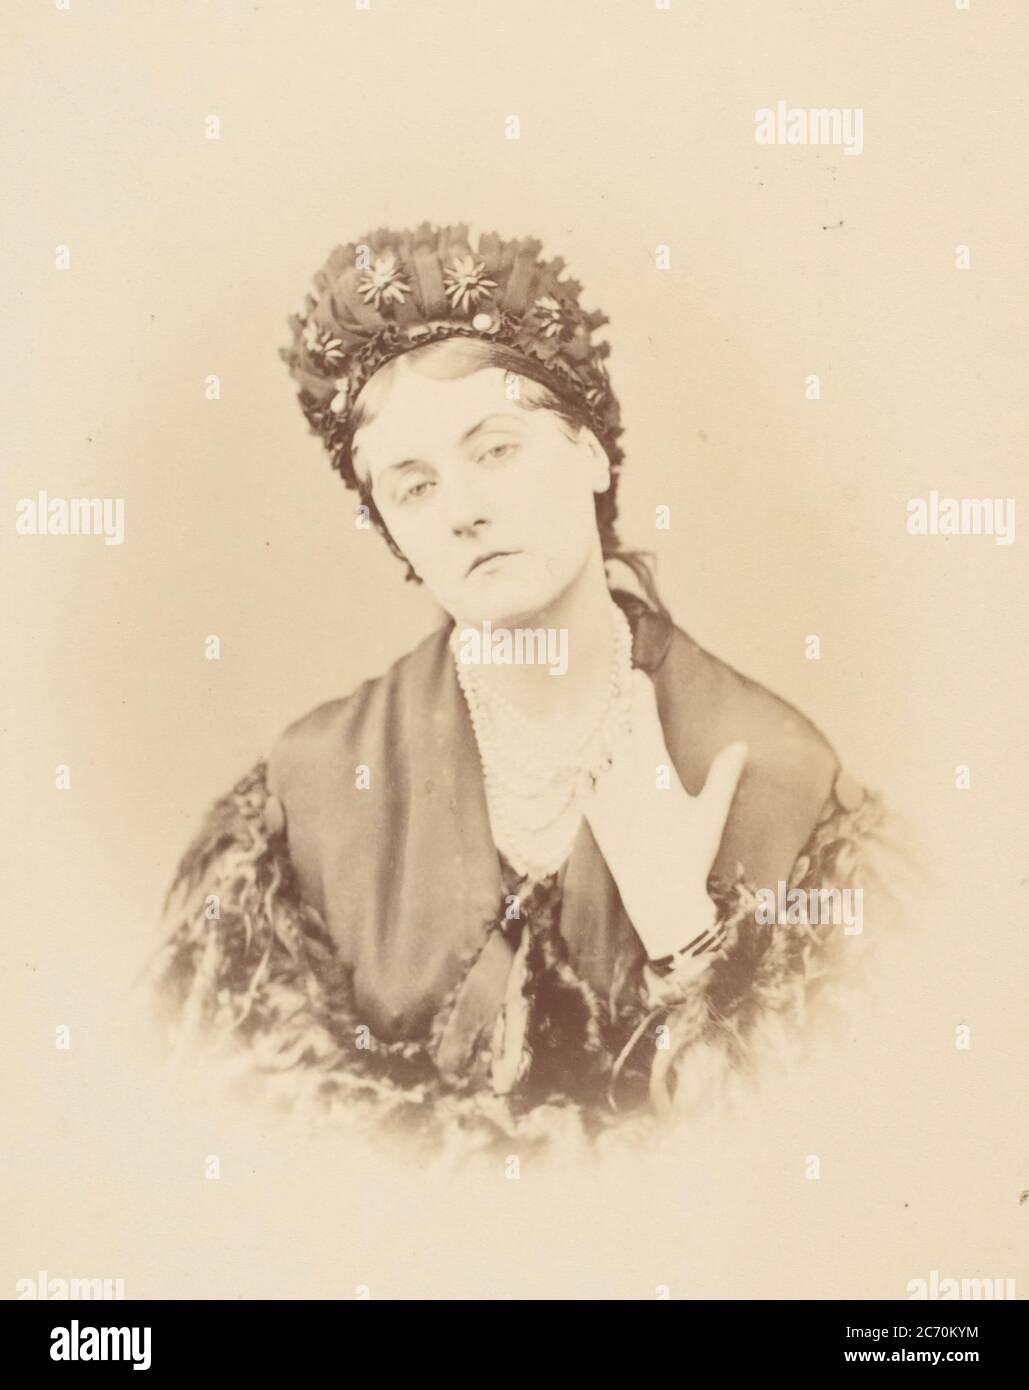 Les edoiles de jois, 1860s. Stock Photo